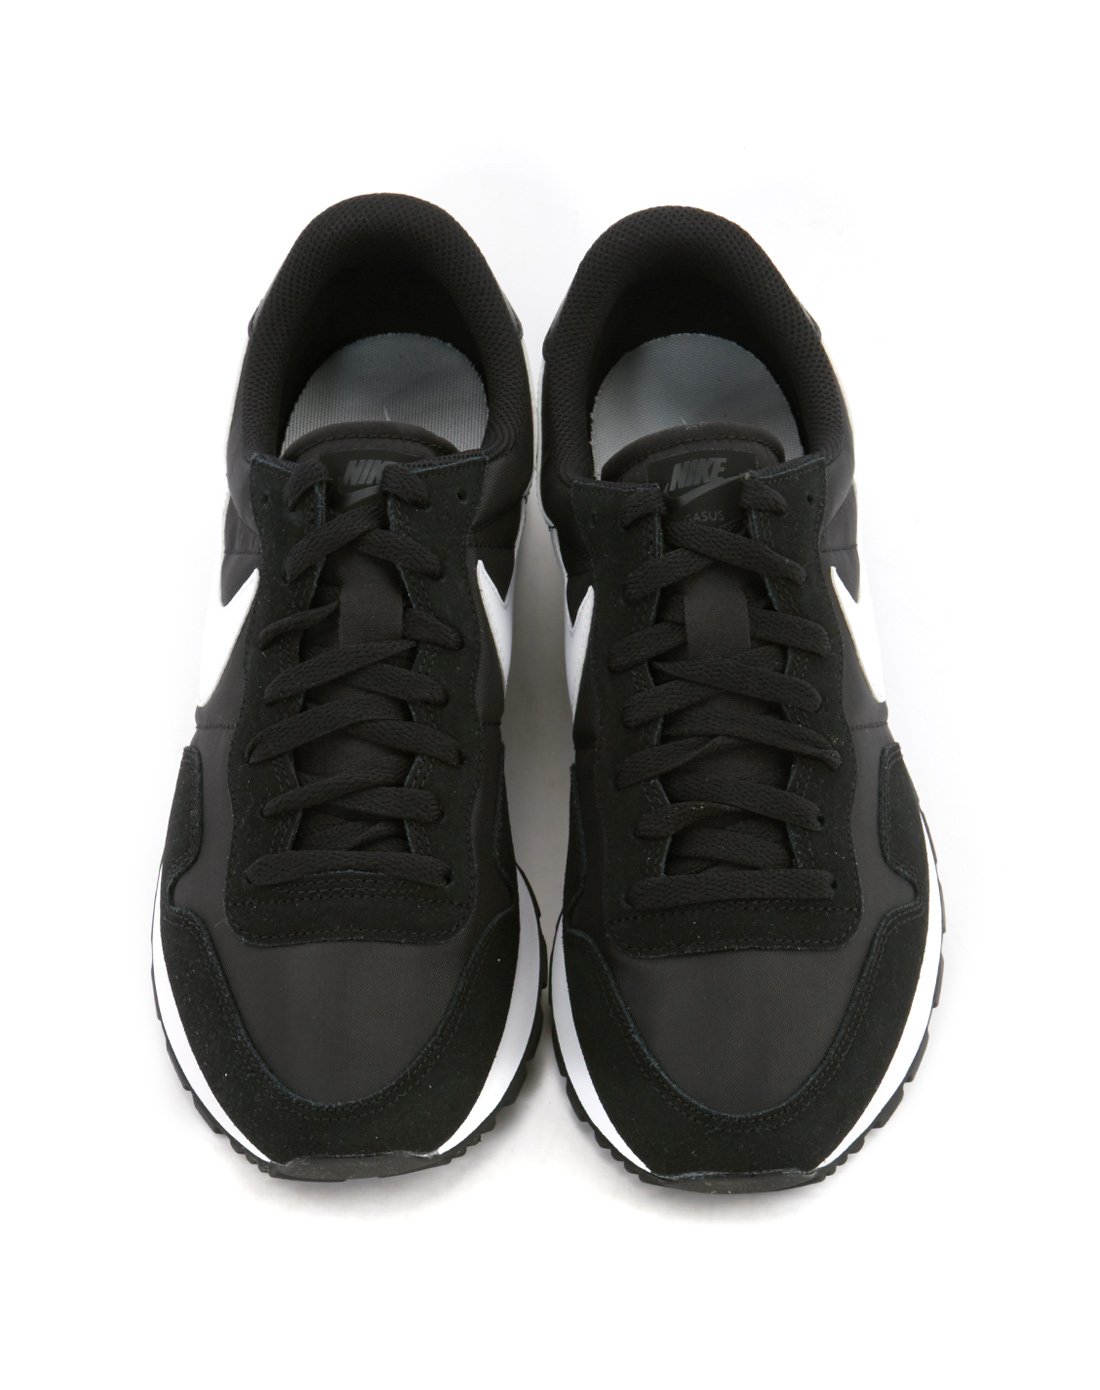 耐克nike air pegasus 83 男款黑色运动鞋 运动休闲系列